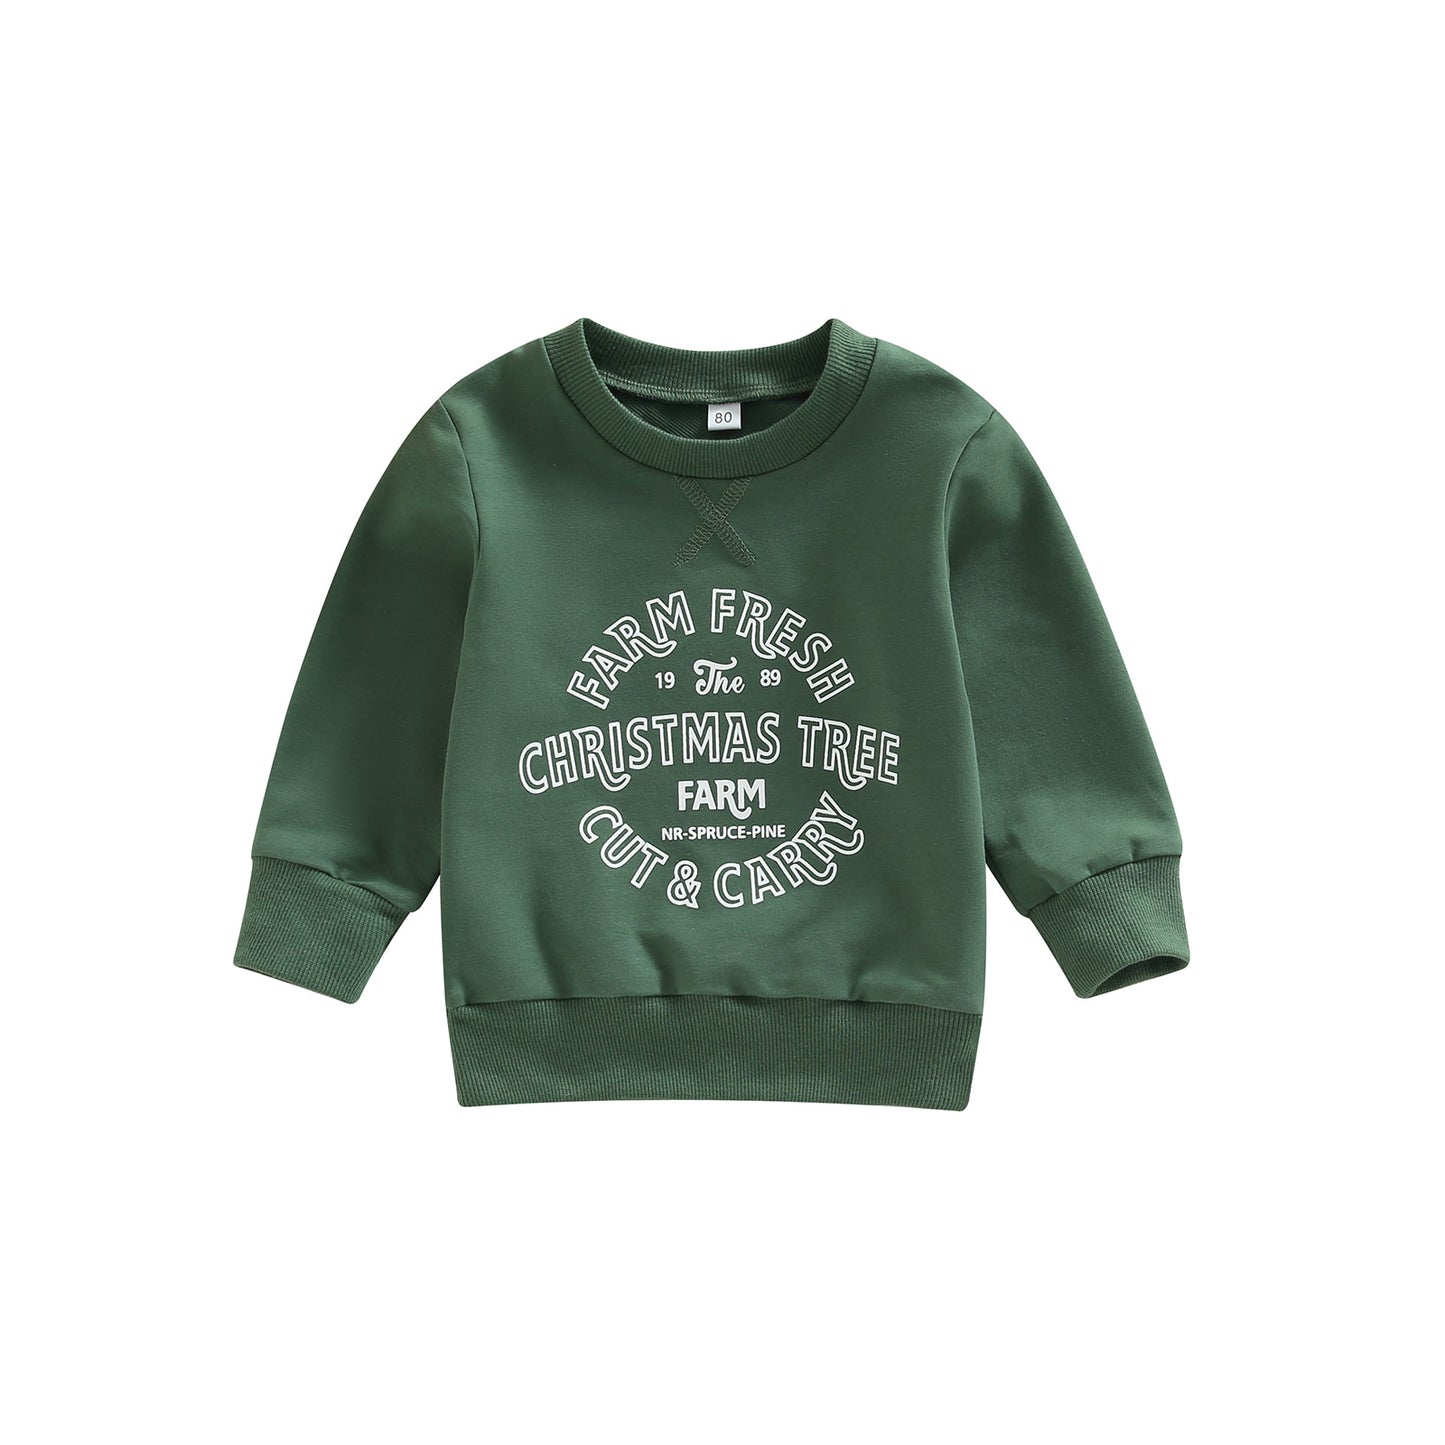 “Christmas Tree Farm” Baby Girls Boys Sweatshirt